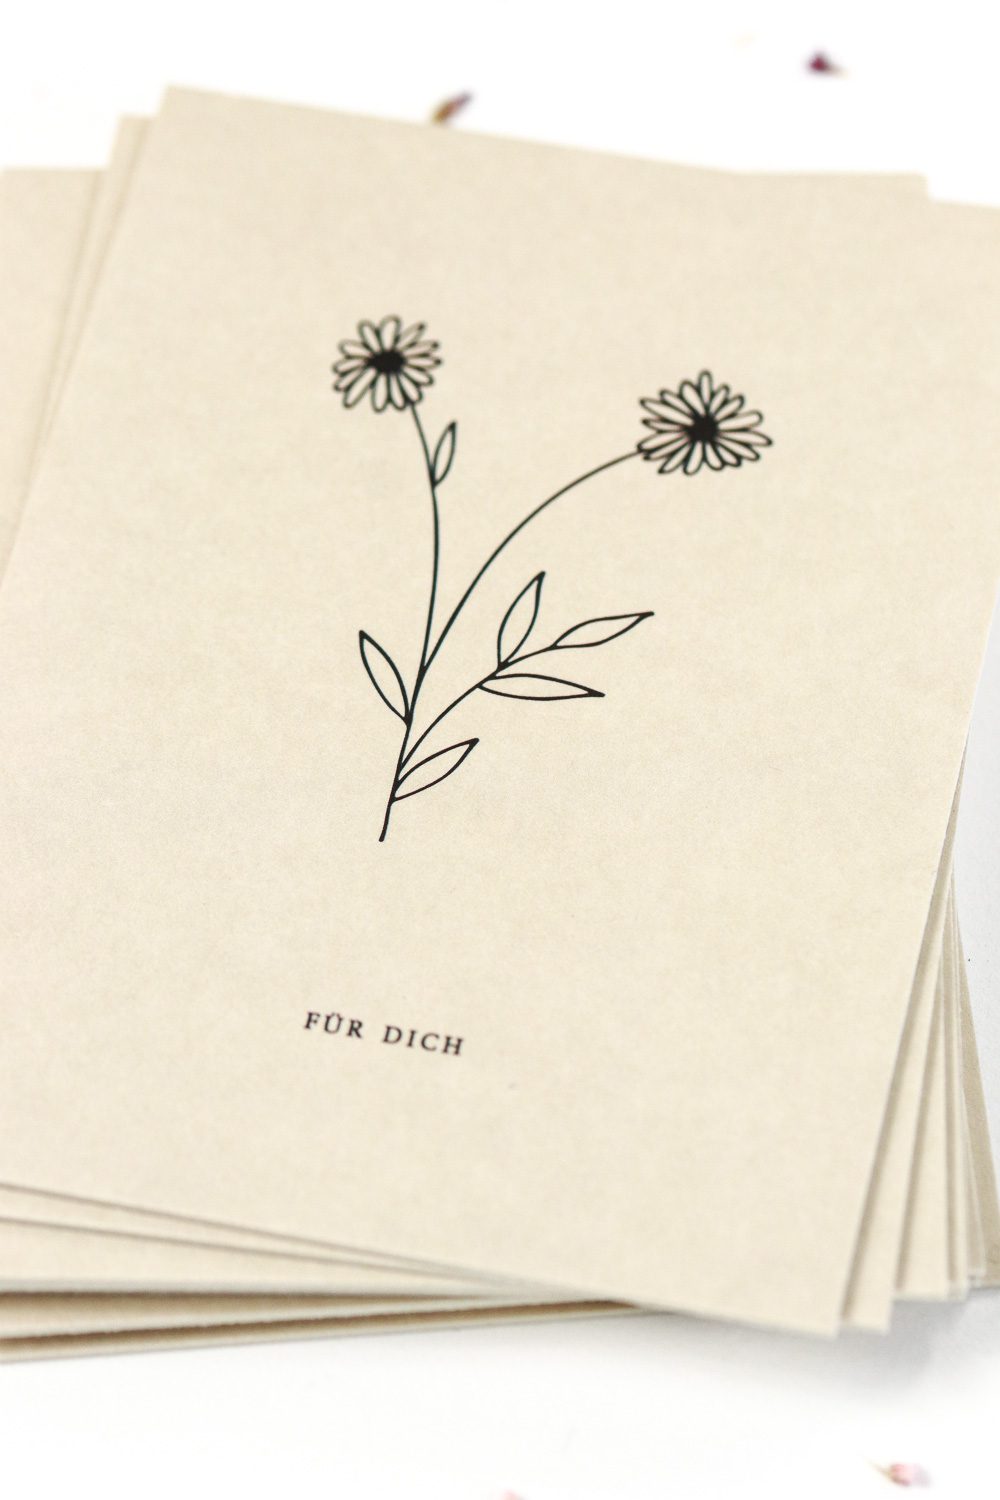 Postkarte Für Dich mit einem Zweig und zwei Blüten